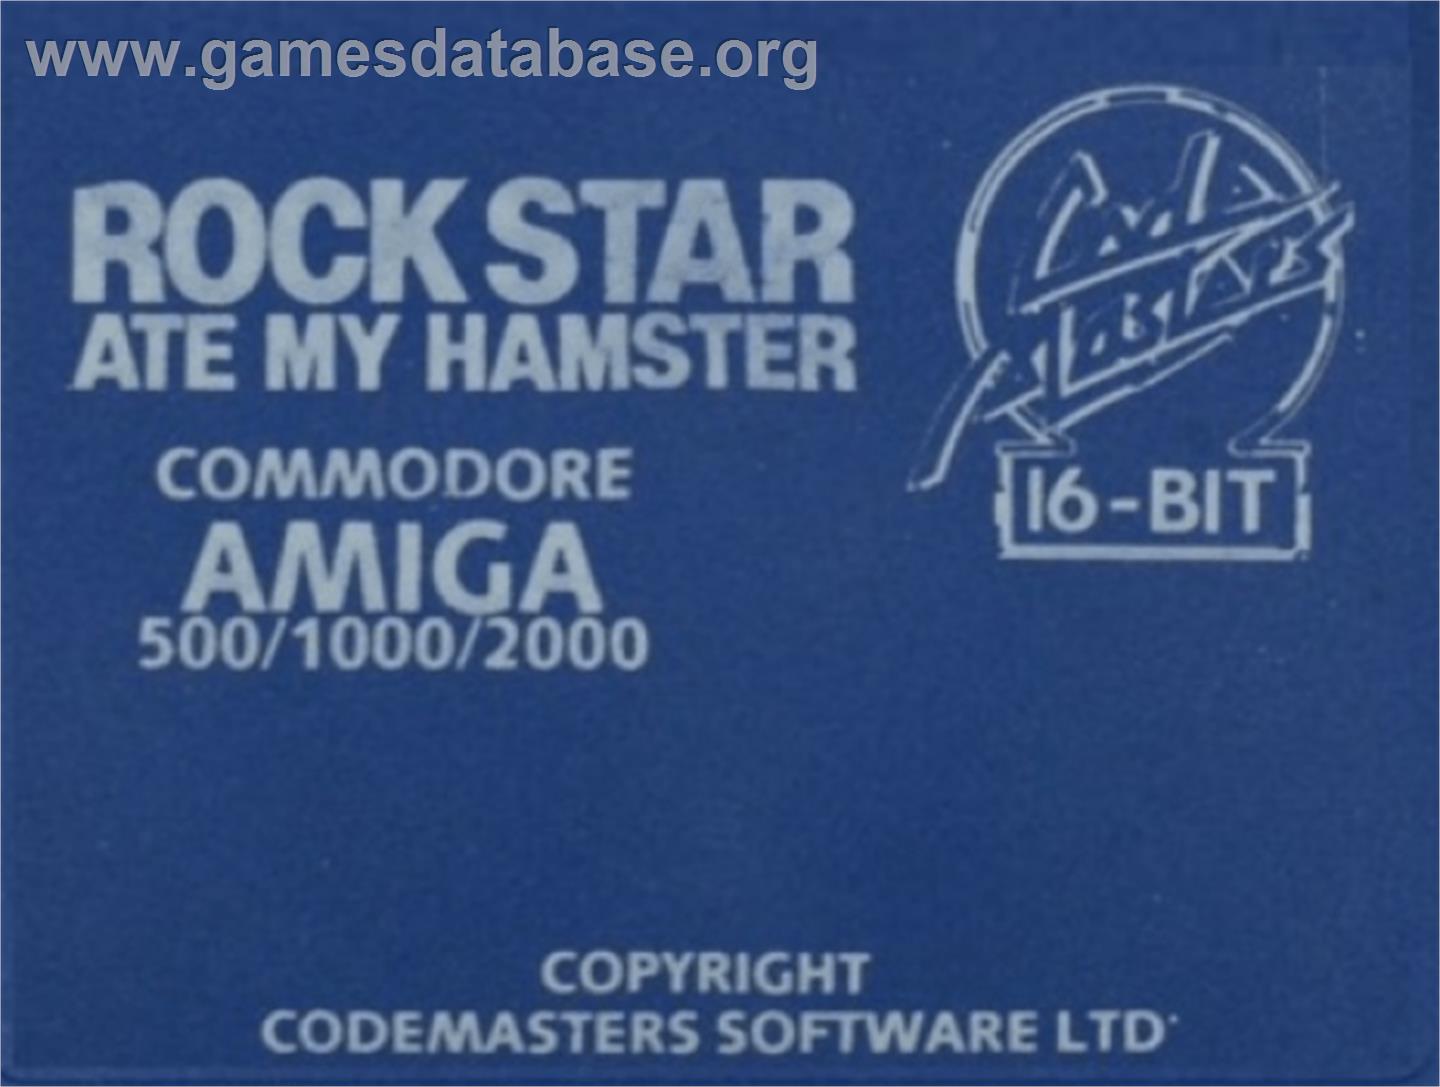 Rock Star Ate my Hamster - Commodore Amiga - Artwork - Cartridge Top